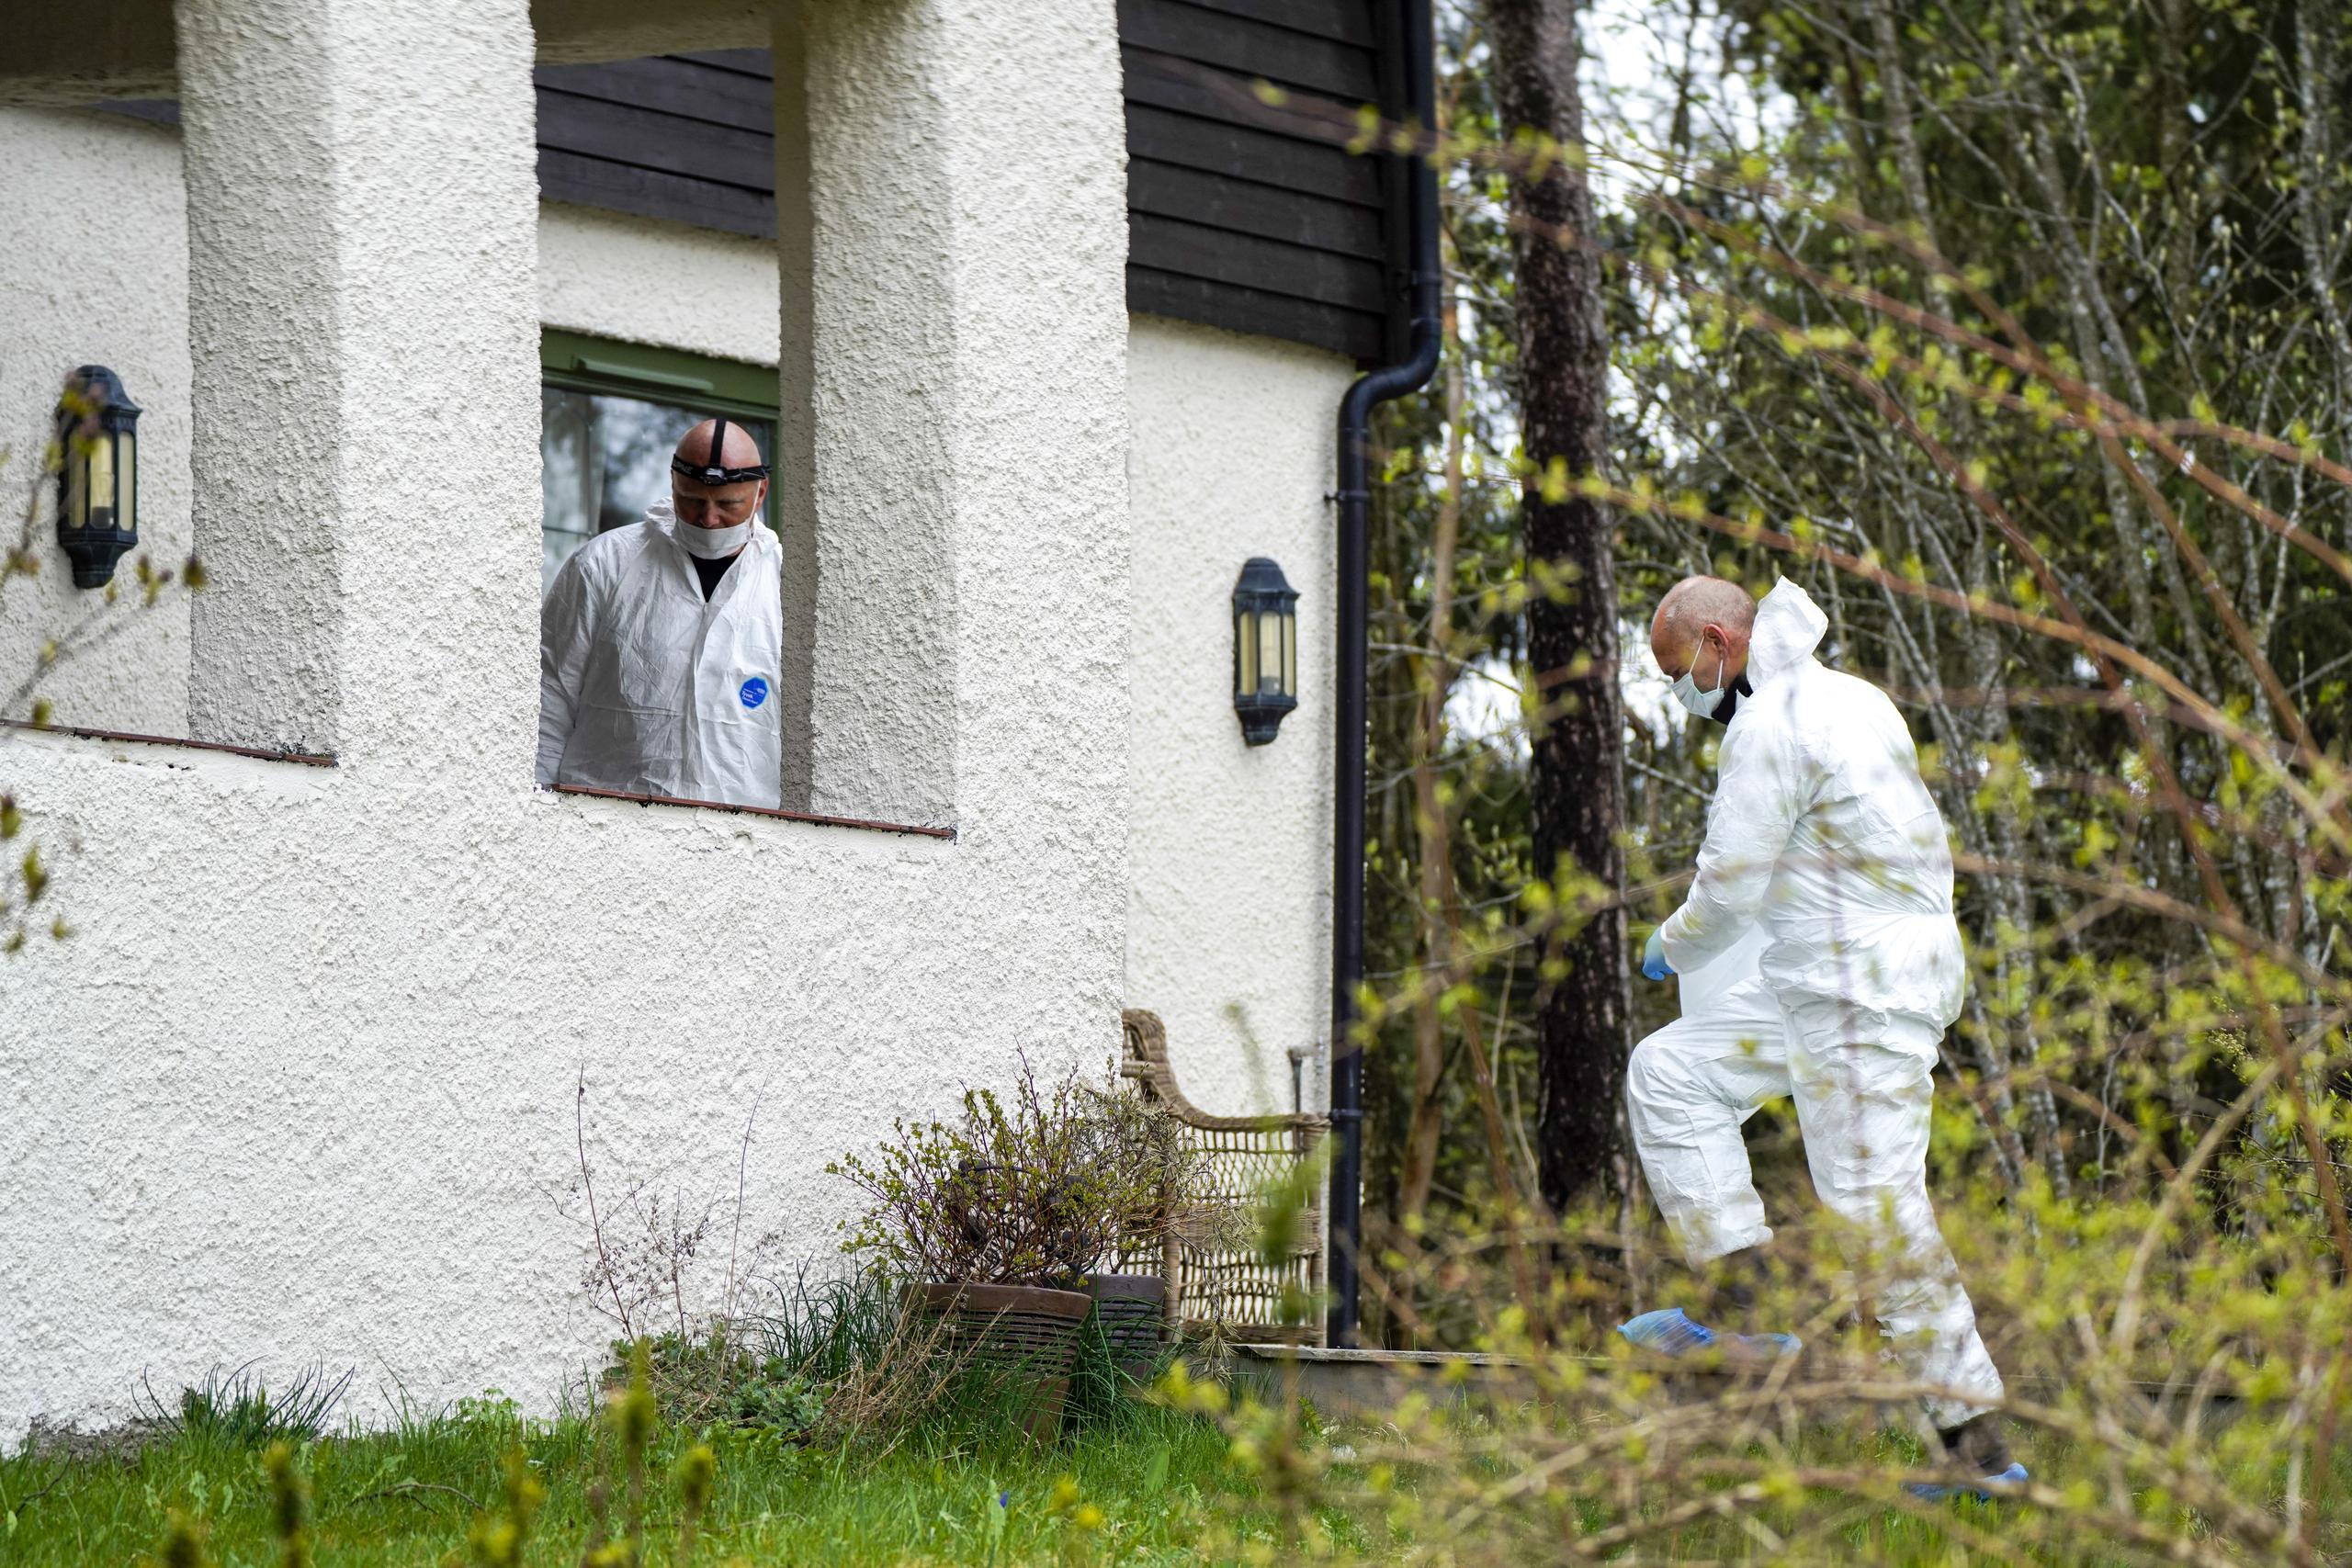 Investigadores de la policía examinan una residencia en Lorenskog, cerca de Oslo, después de que el esposo de Ann-Elisabeth Hagen, Tom Hagen, fuera arrestado en la investigación sobre la desaparición de su esposa